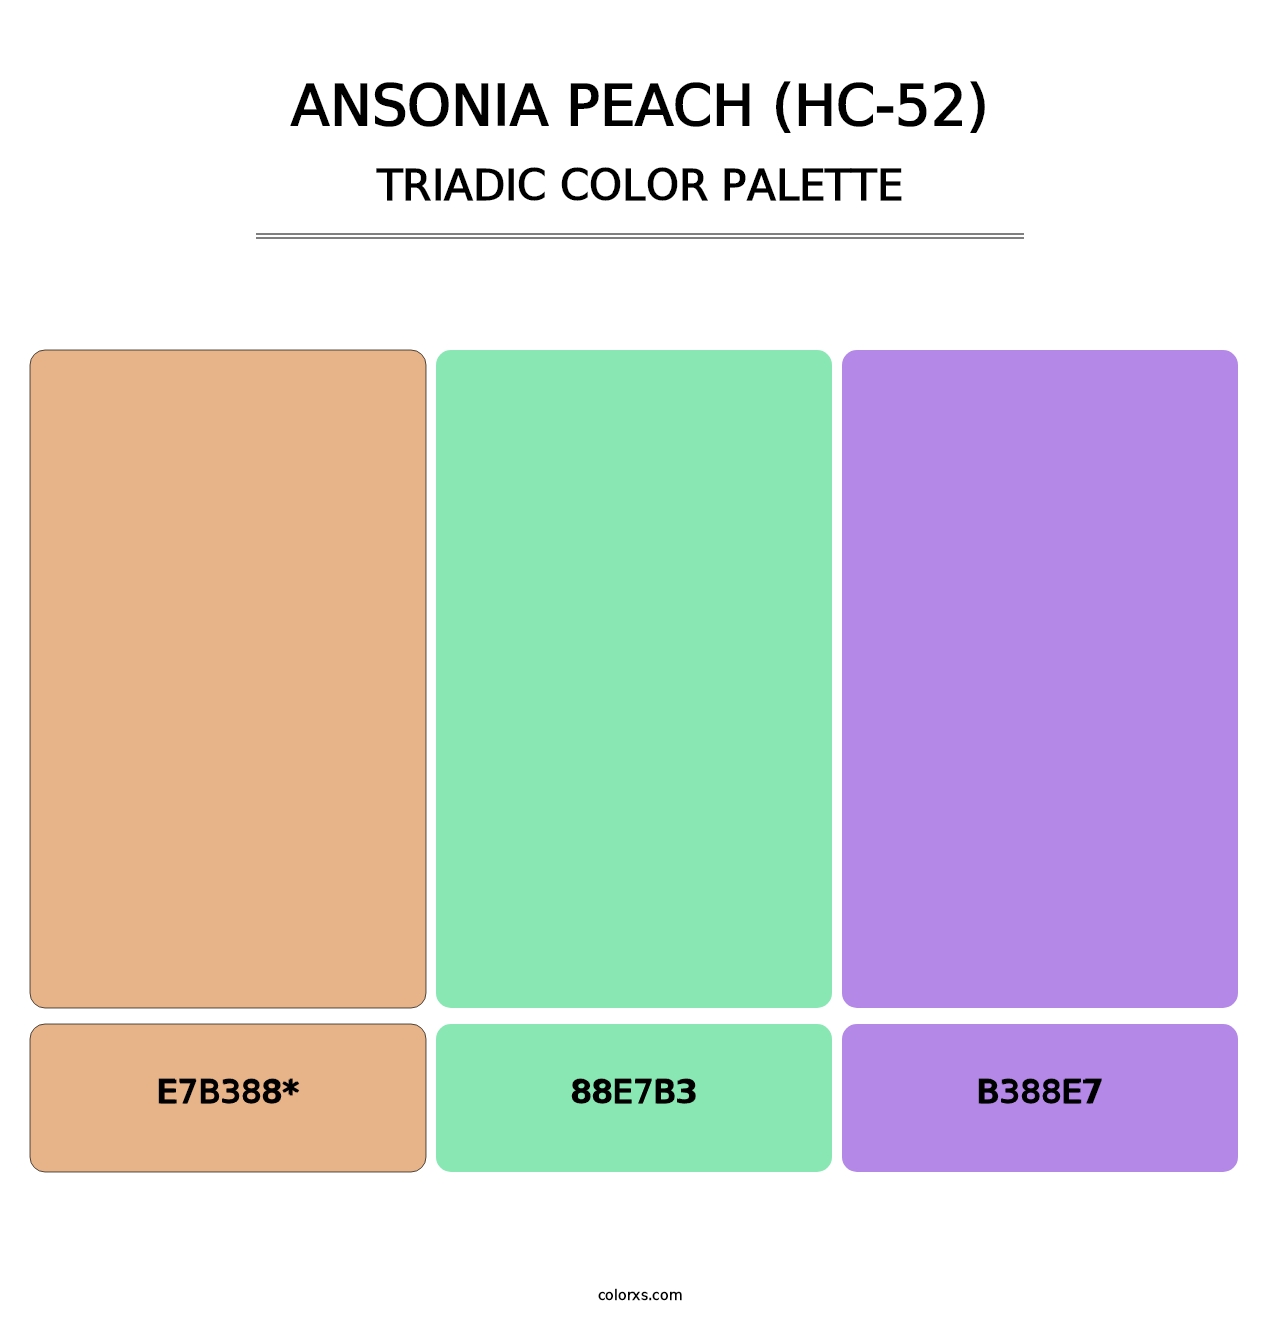 Ansonia Peach (HC-52) - Triadic Color Palette